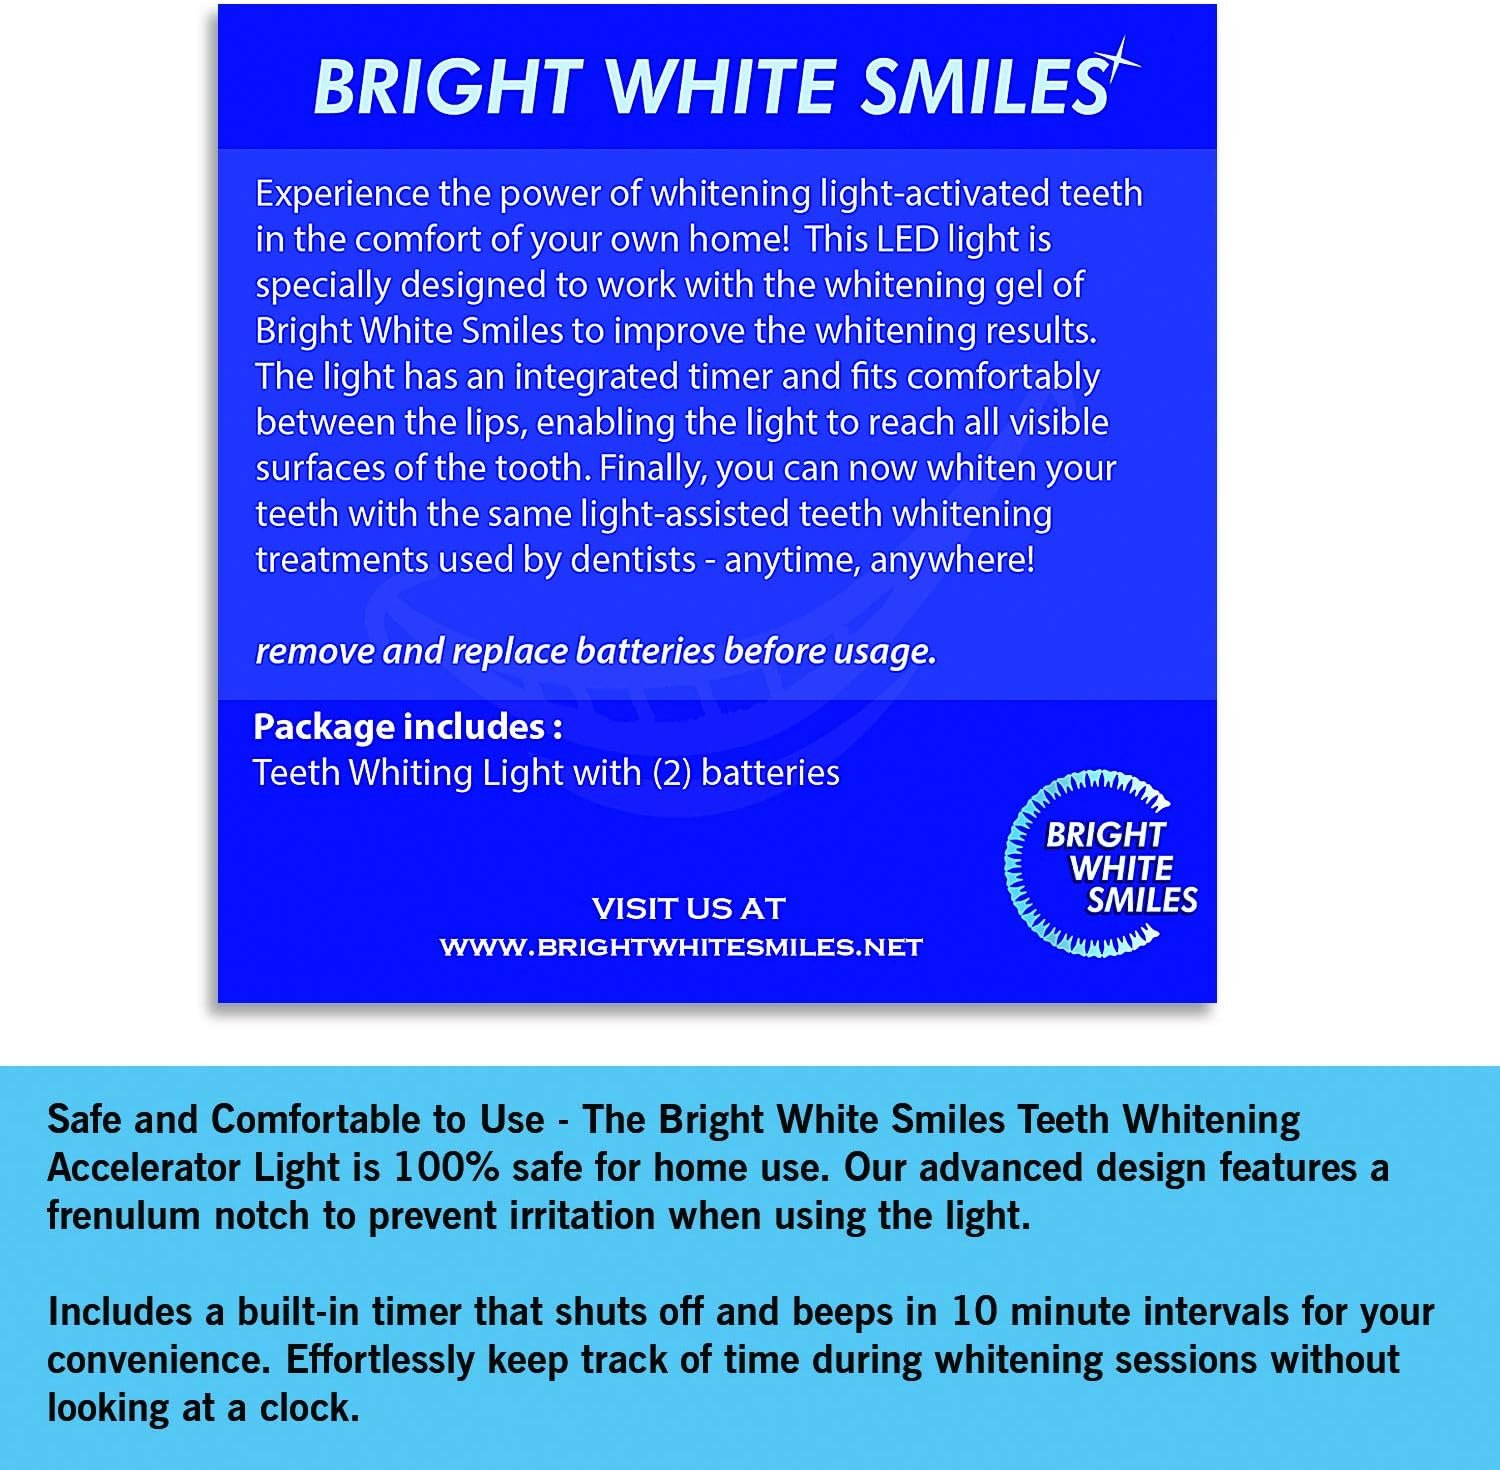 Bright White Smiles Teeth Whitening Accelerator Light, 5x More Powerful Blue LED Light, Whiten Teeth Faster